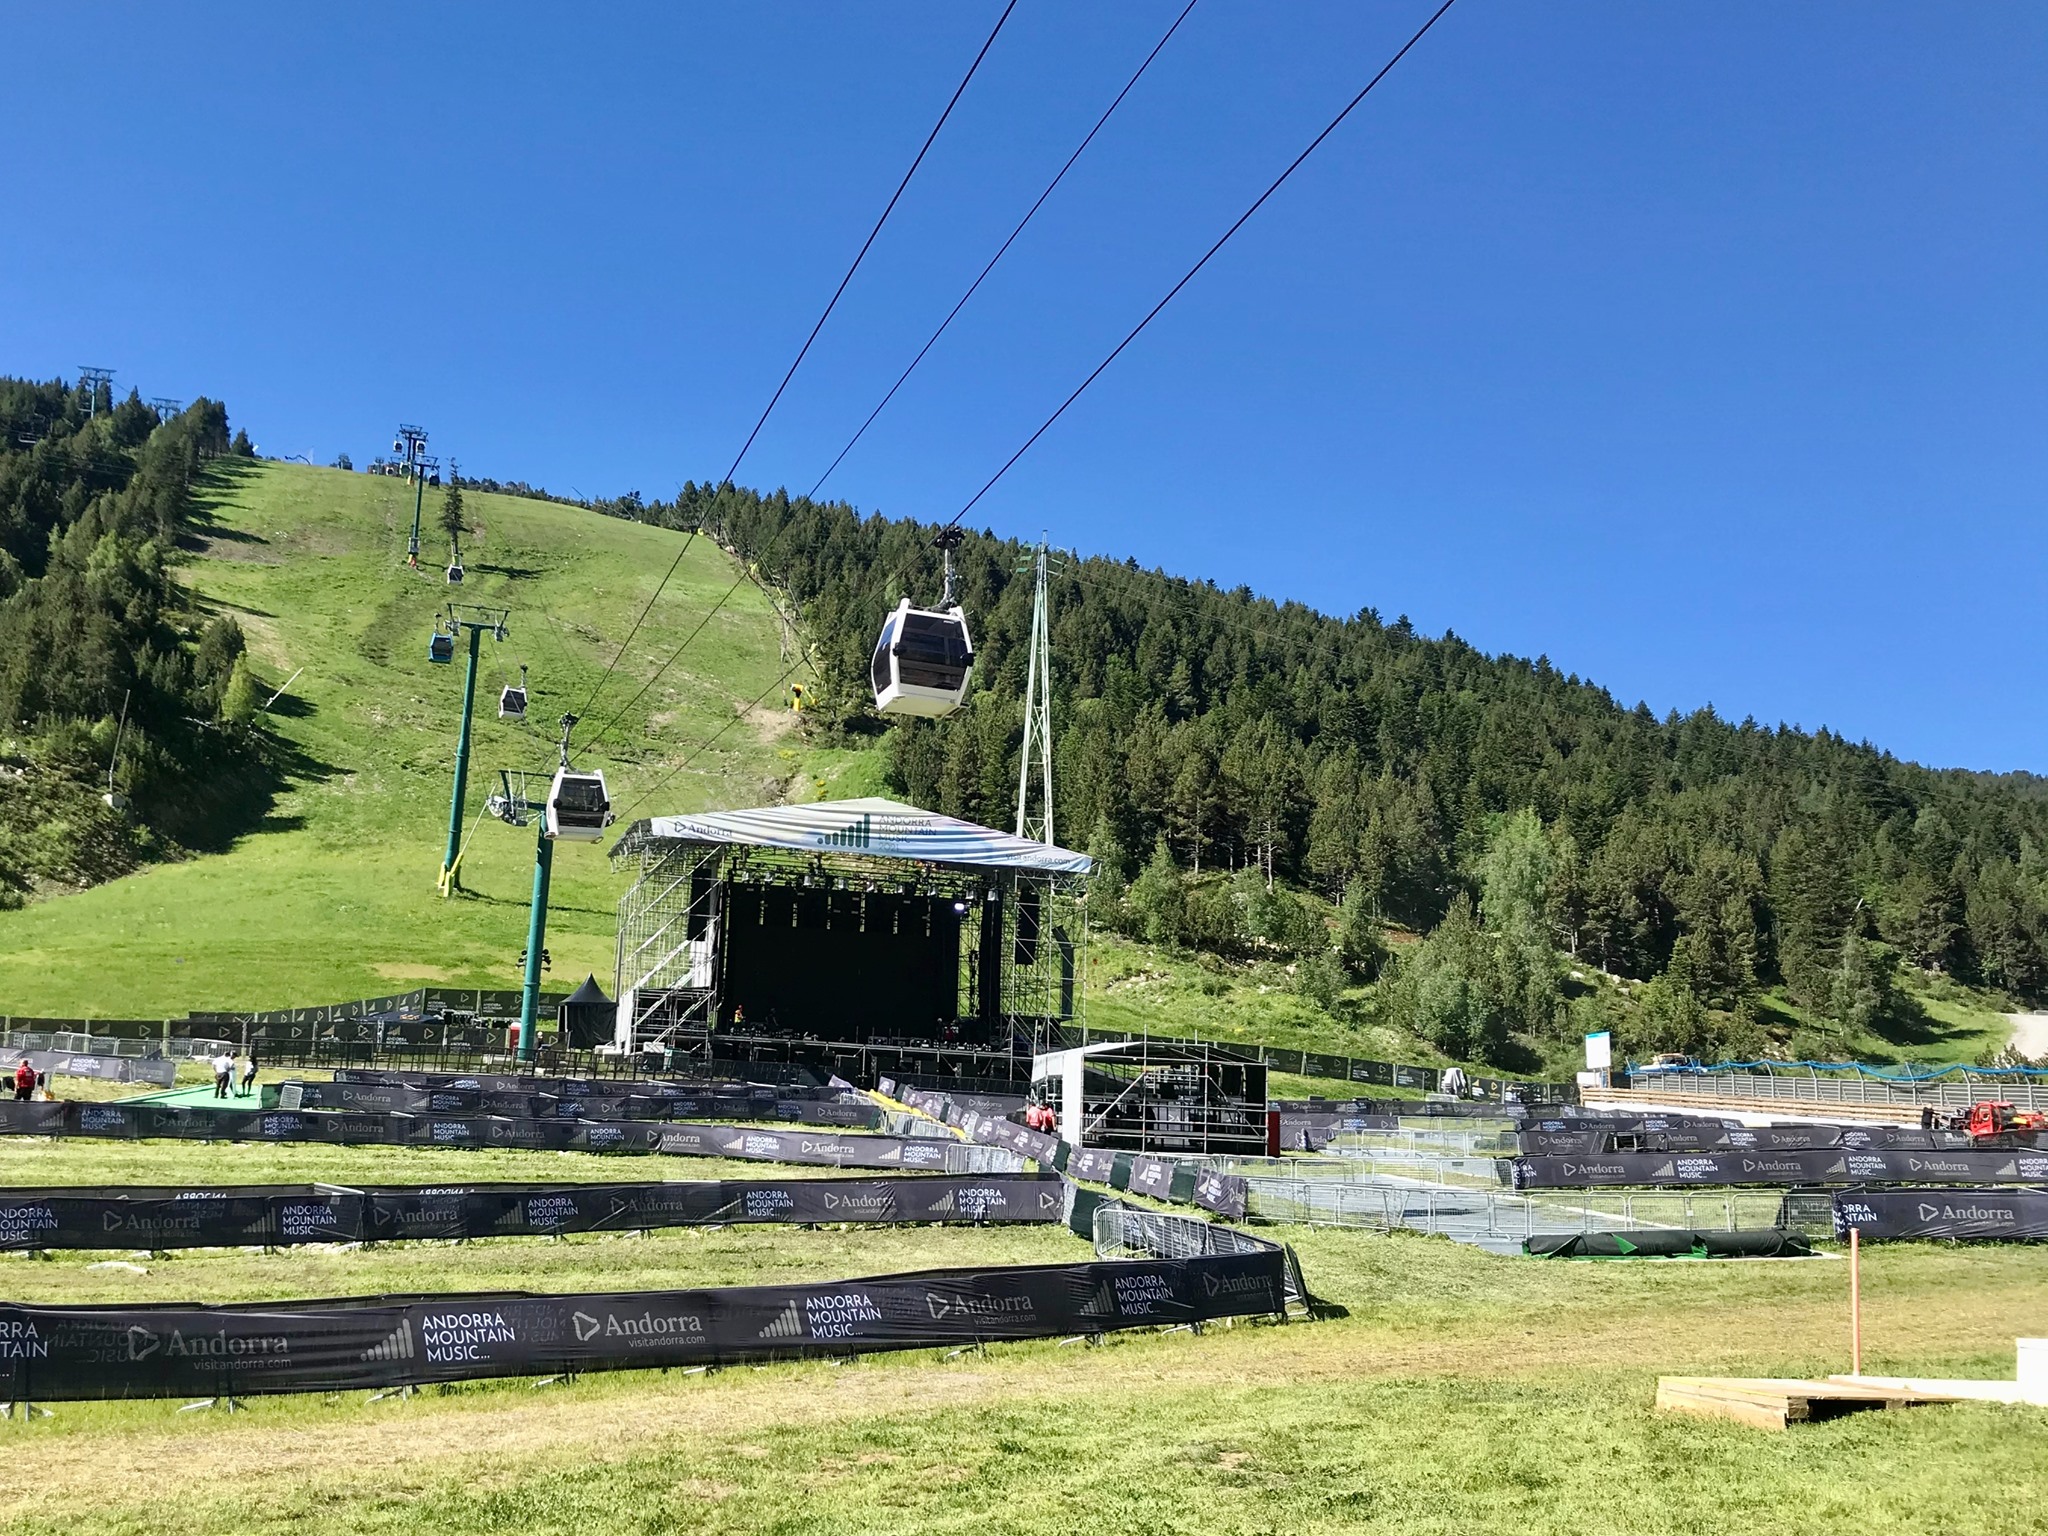 Andorra Mountain Music